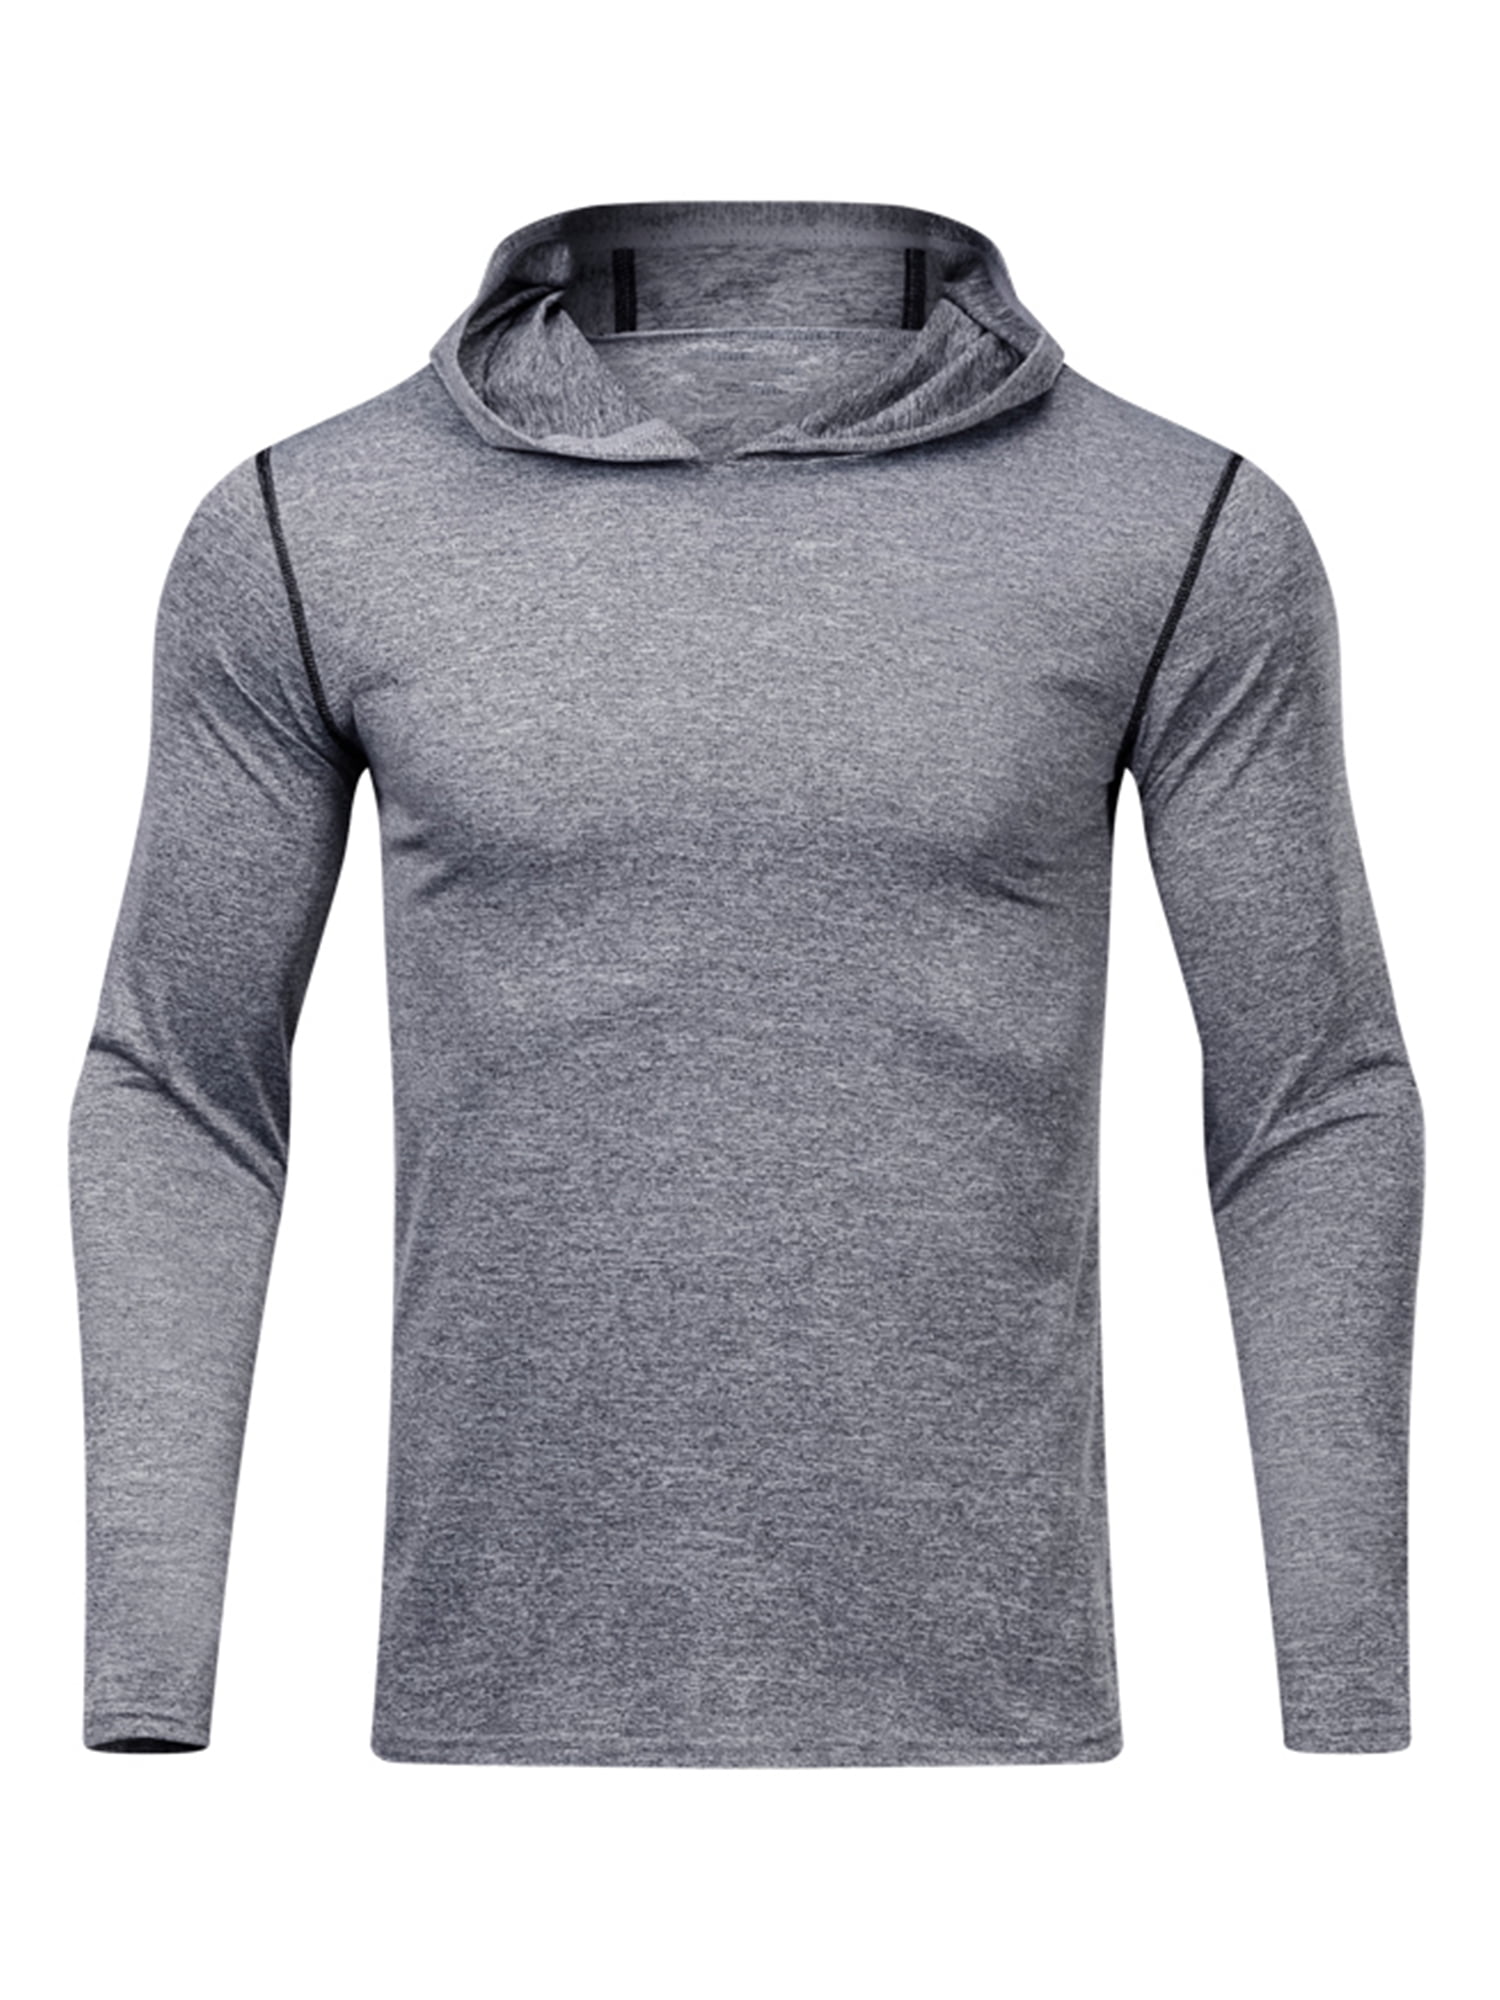 Men's Slim Fit Hoodie Long Sleeve Muscle Tee T-shirt Casual Outwear Tops Blouse 